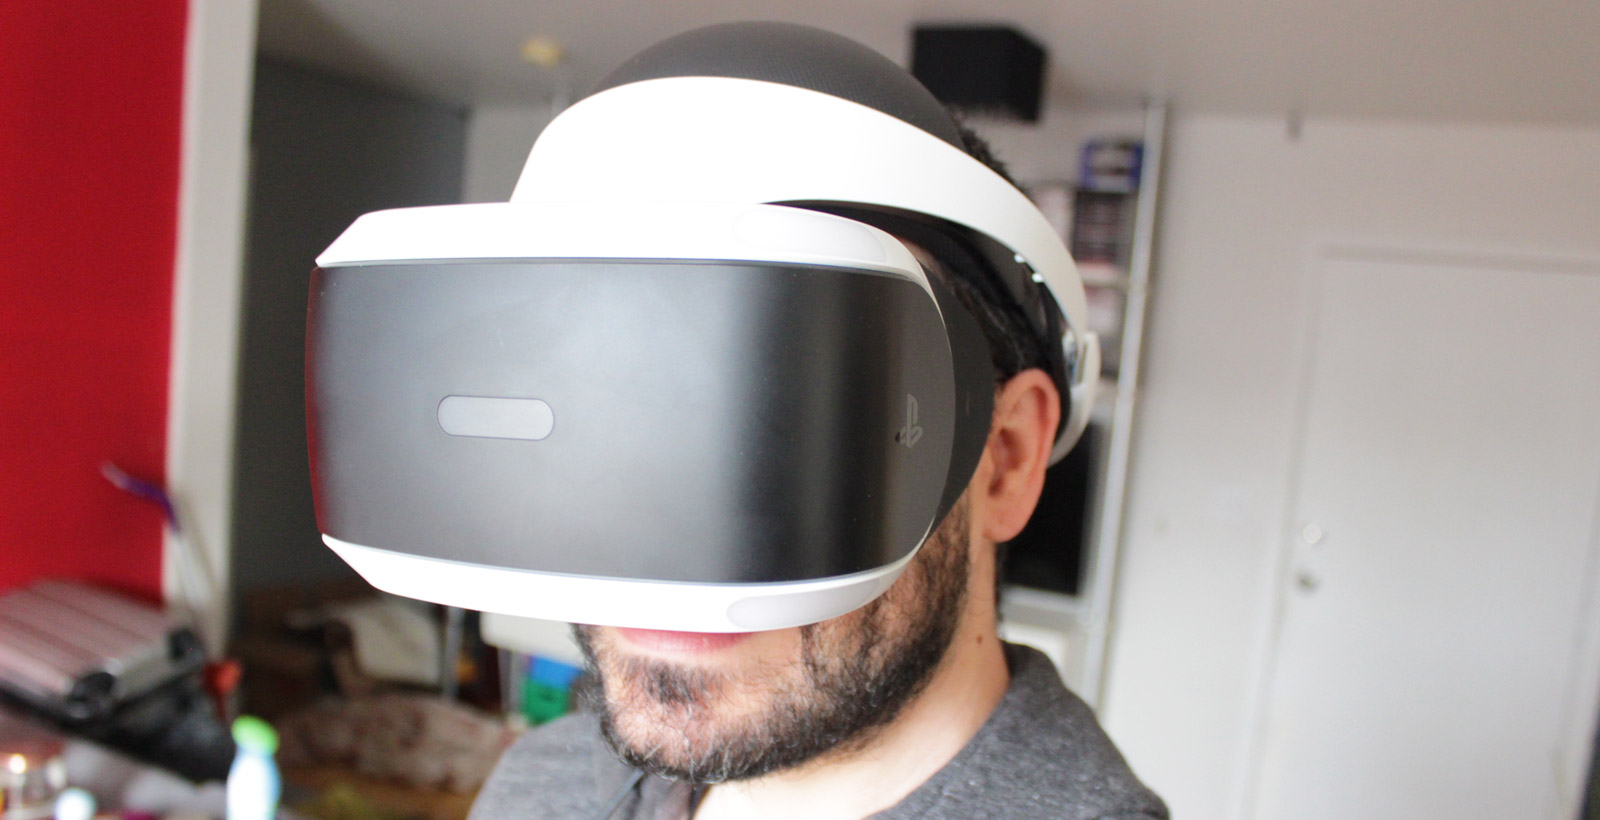 Prendre un selfie avec le PlayStation VR n'est pas simple.